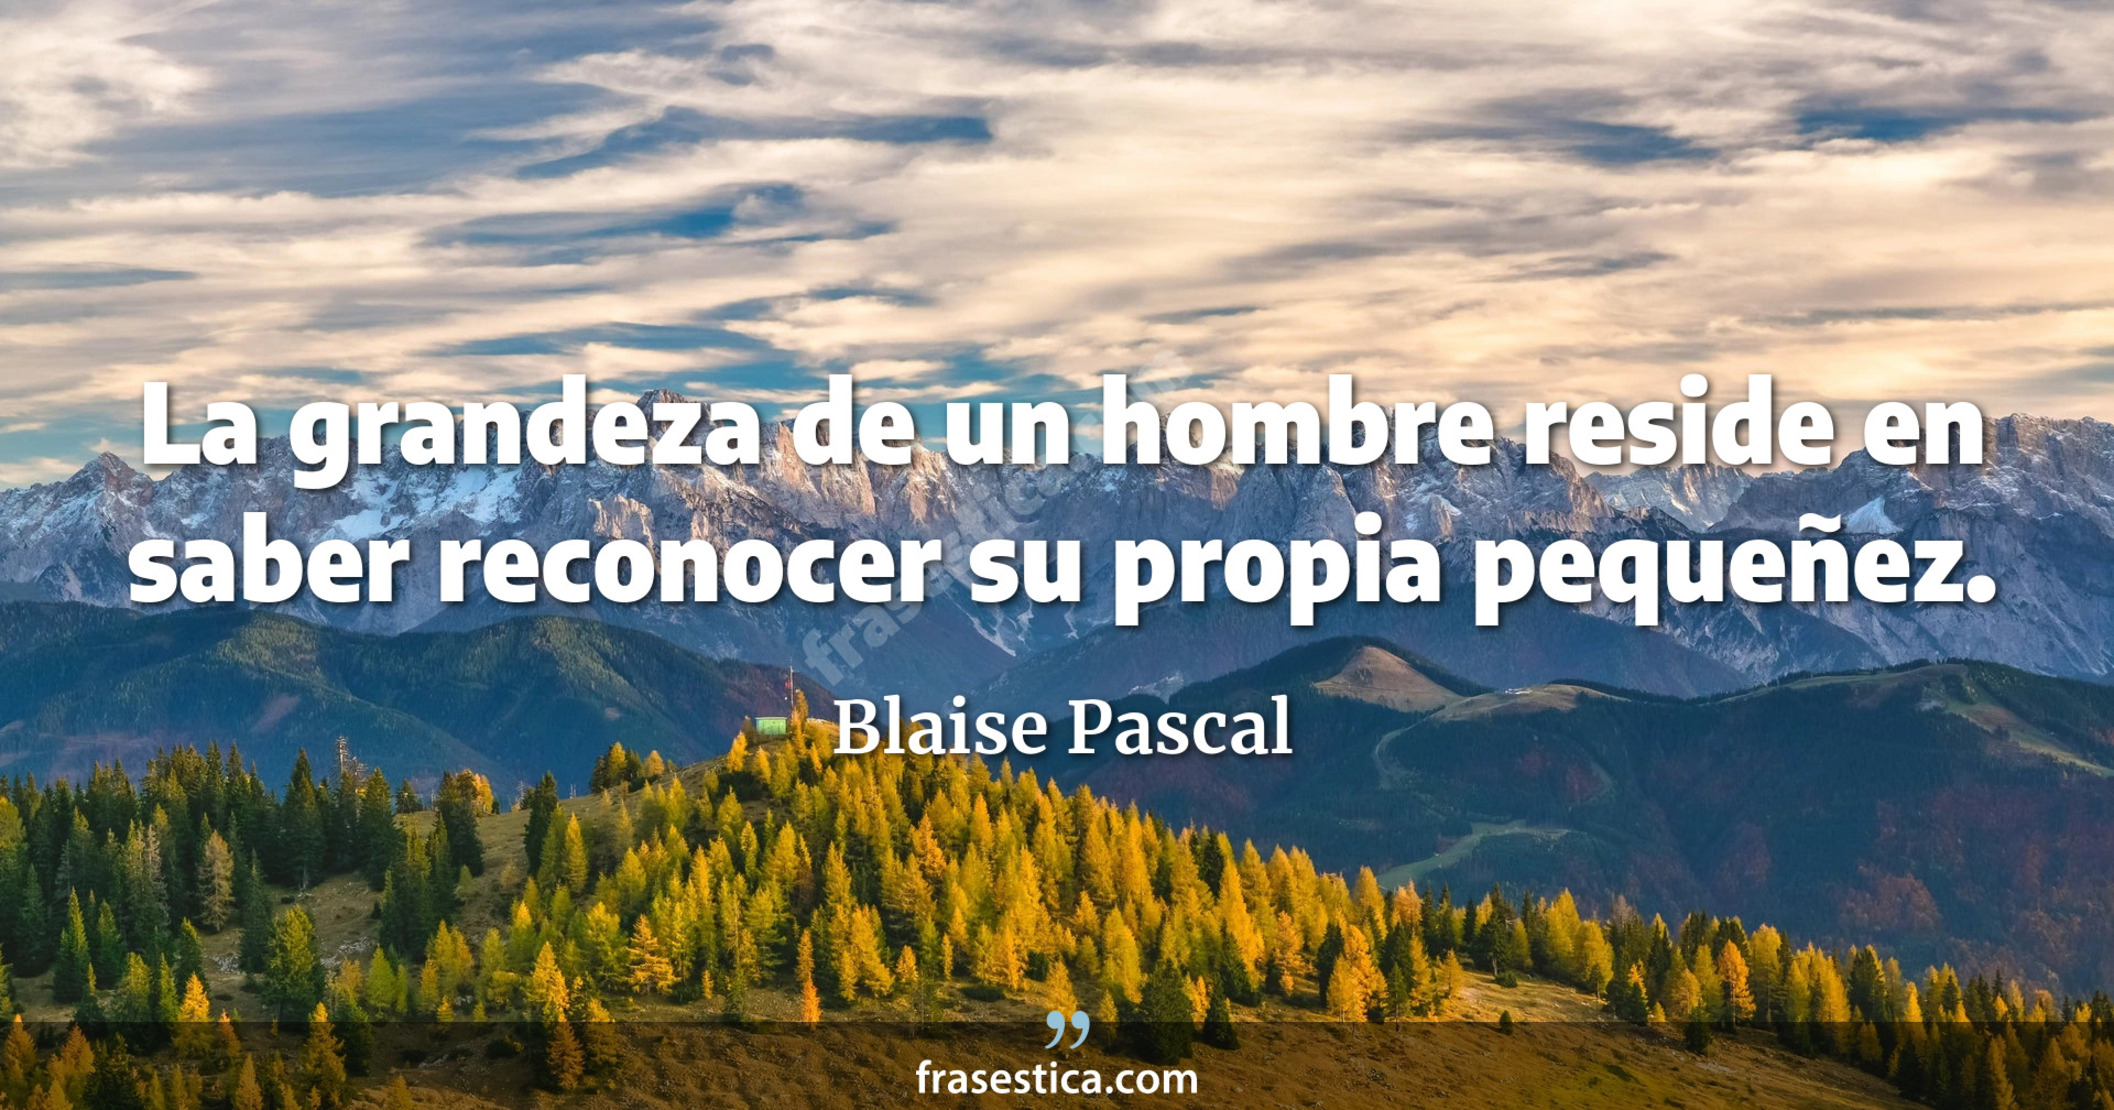 La grandeza de un hombre reside en saber reconocer su propia pequeñez. - Blaise Pascal